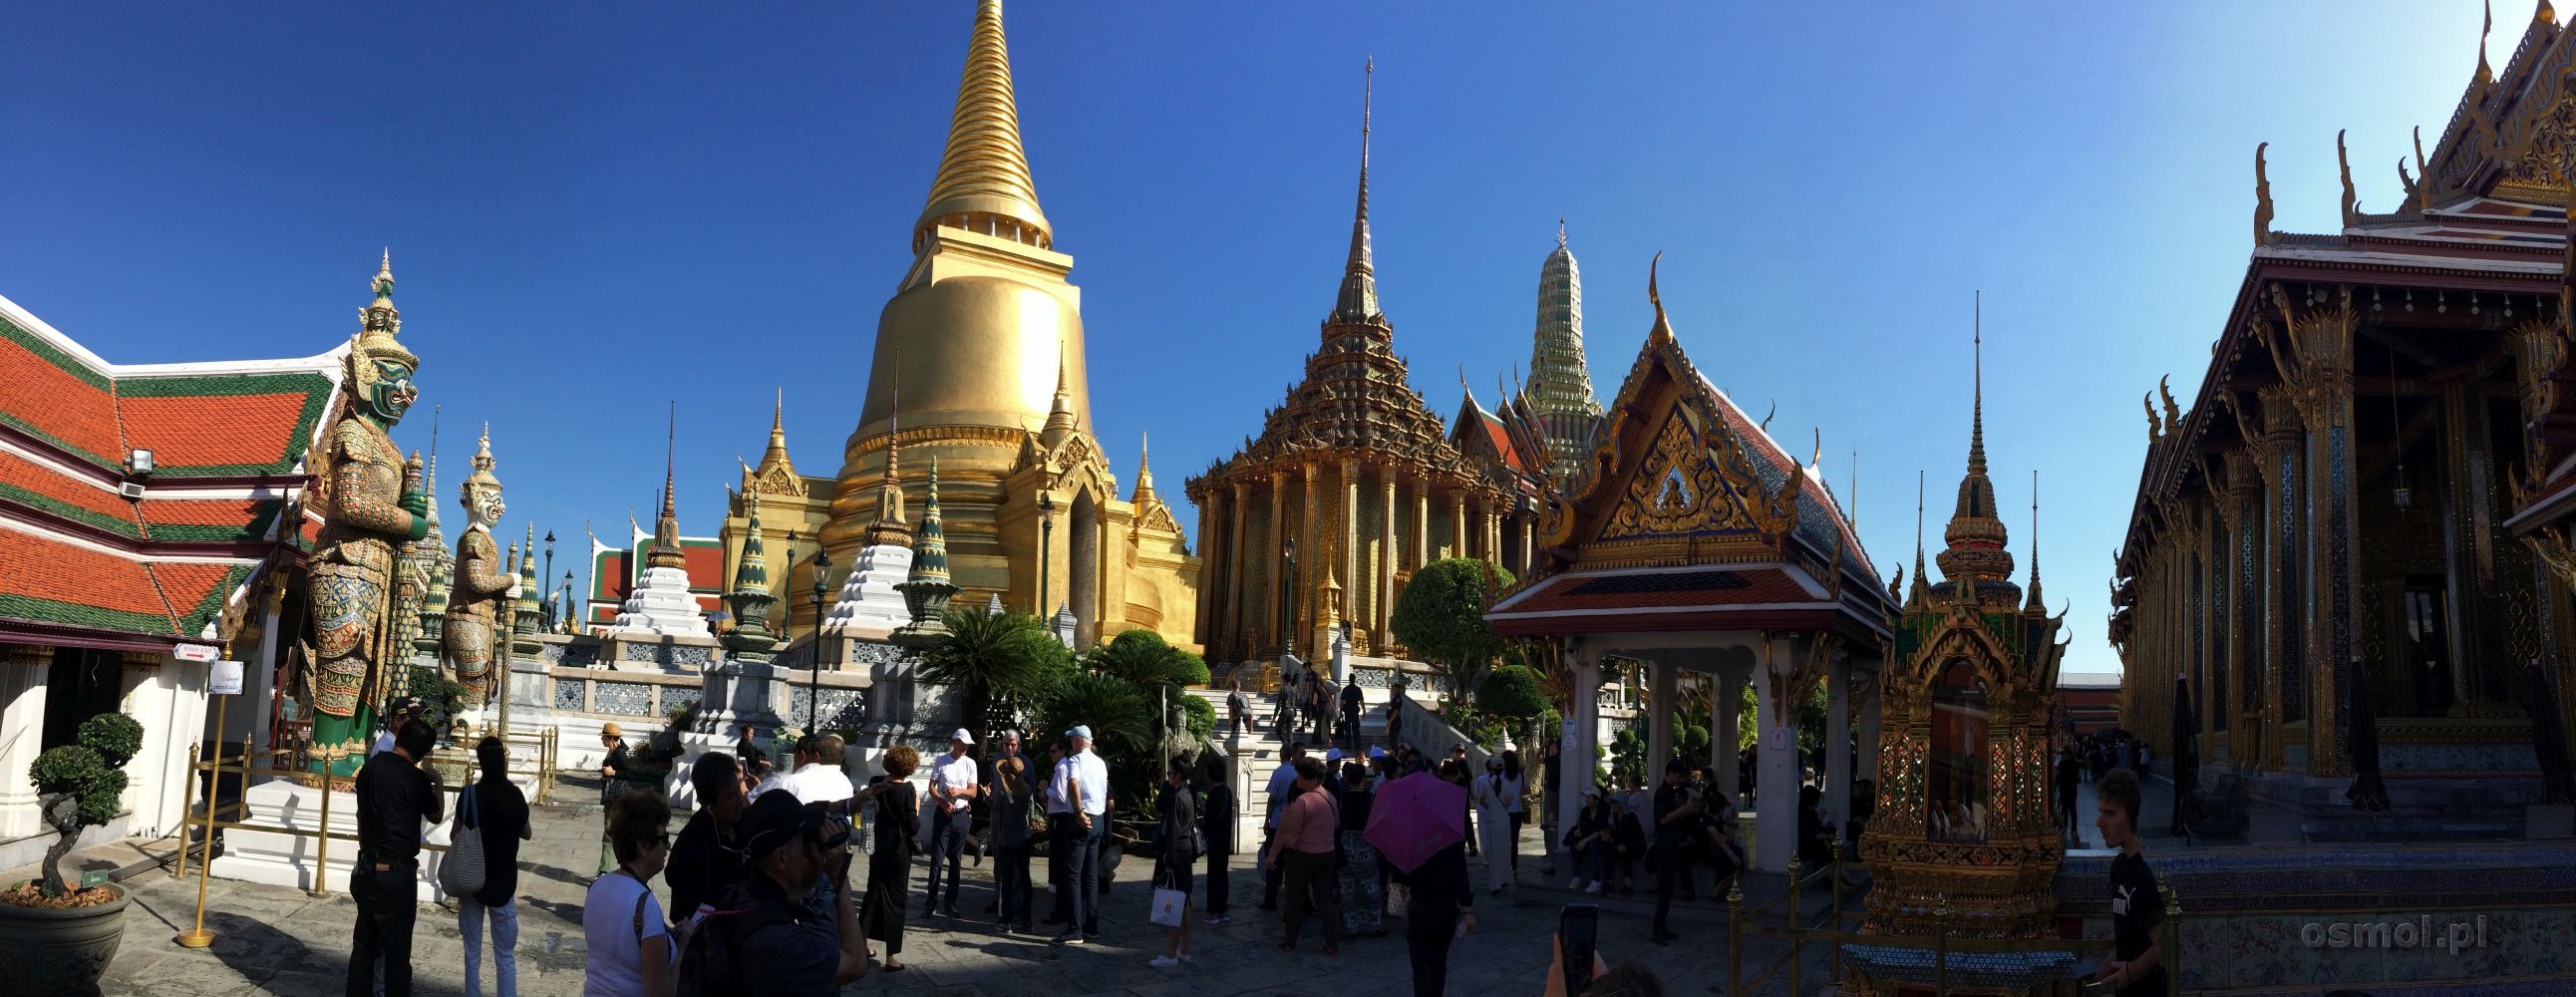 Pałac Królewski w Bangkoku złoto i tradycja